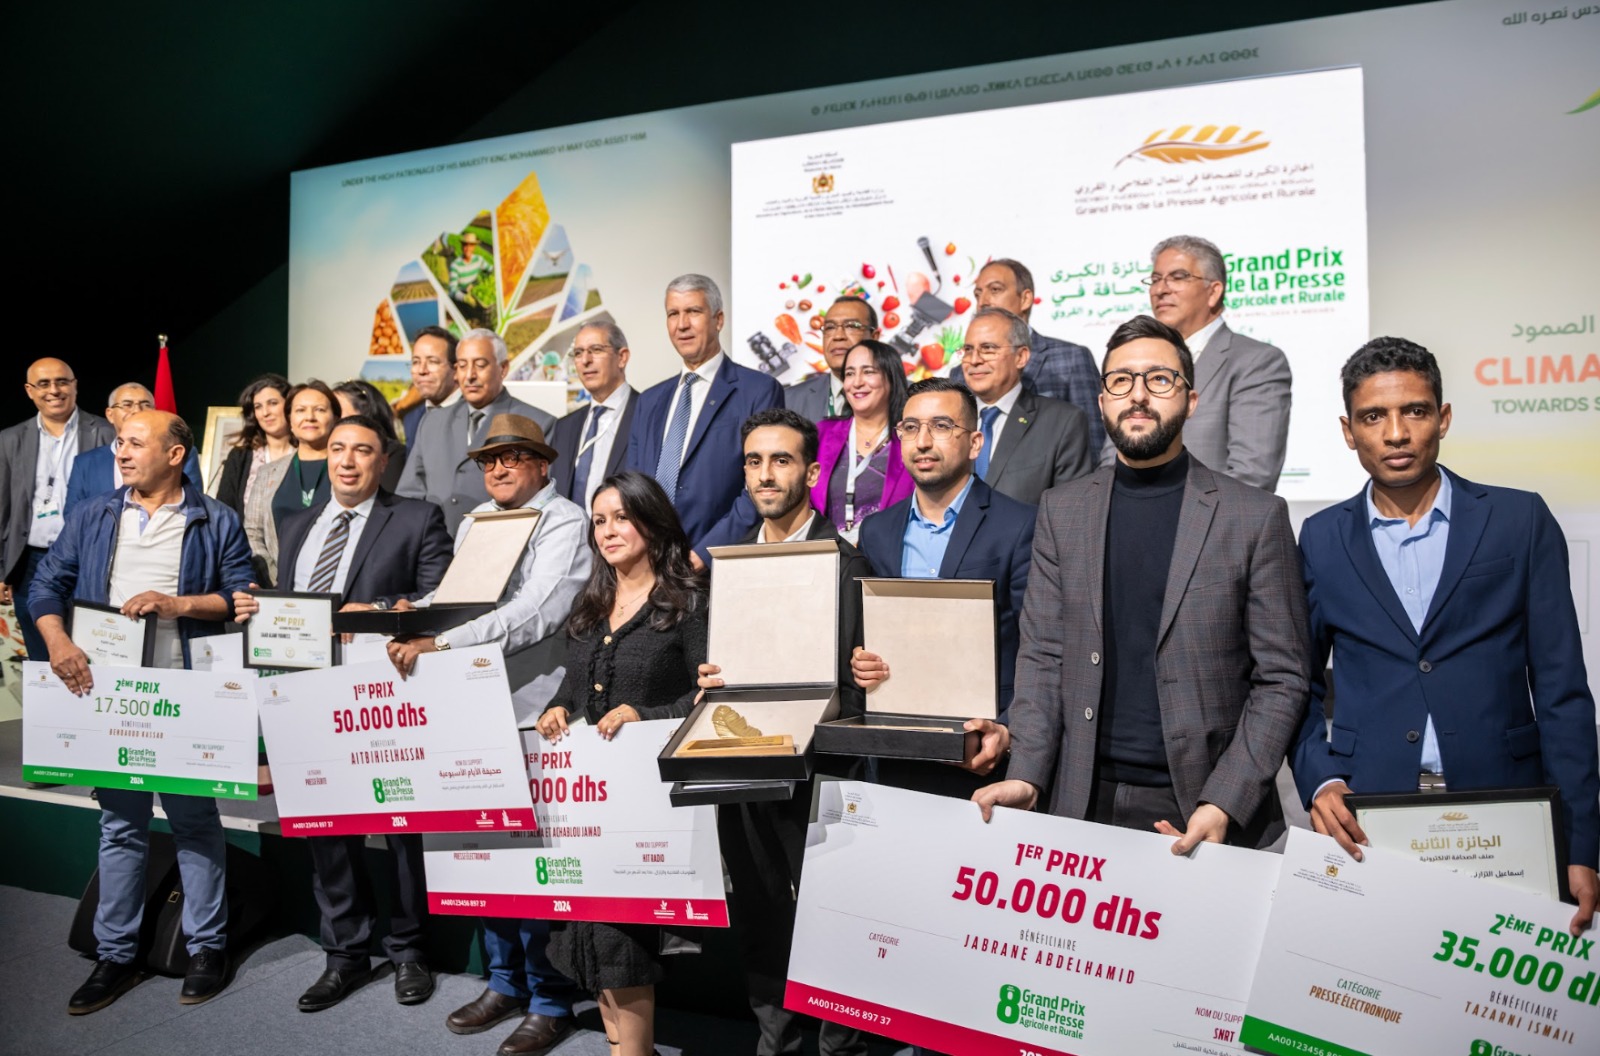 تتويج 9 صحفيين في النسخة الثامنة للجائزة الكبرى للصحافة الفلاحية والقروية - AgadirToday